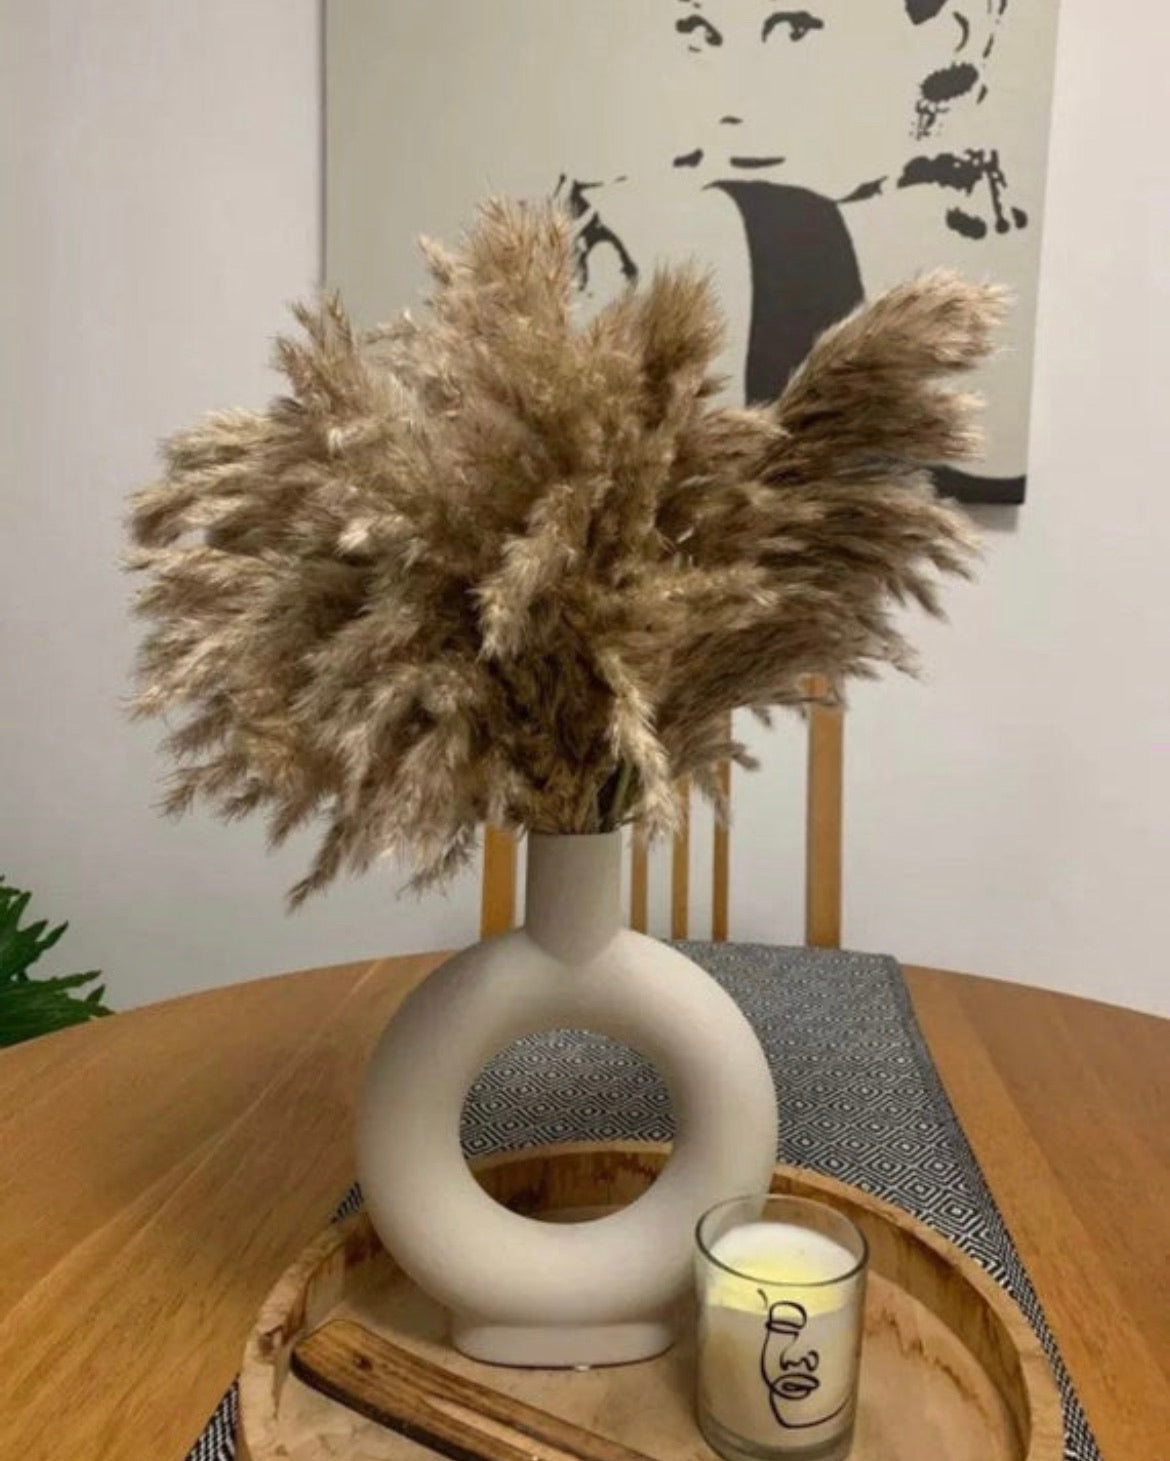 Nordic Ceramic Donut Vase